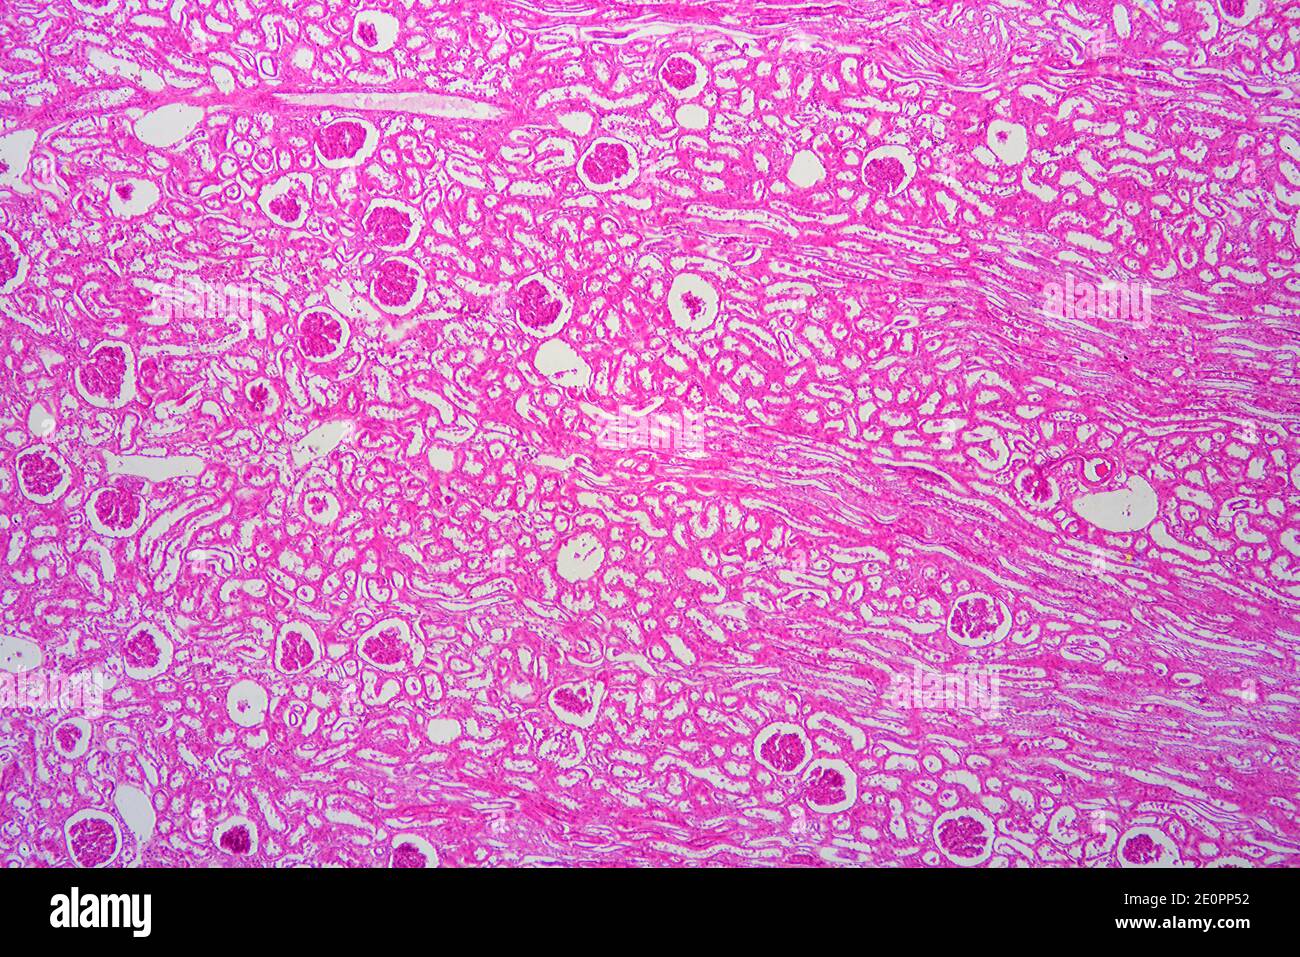 Sezione renale umana con sangue iniettato che mostra glomeruli, corpuscoli malfighiani e parenchima. X25 a 10 cm di larghezza. Foto Stock